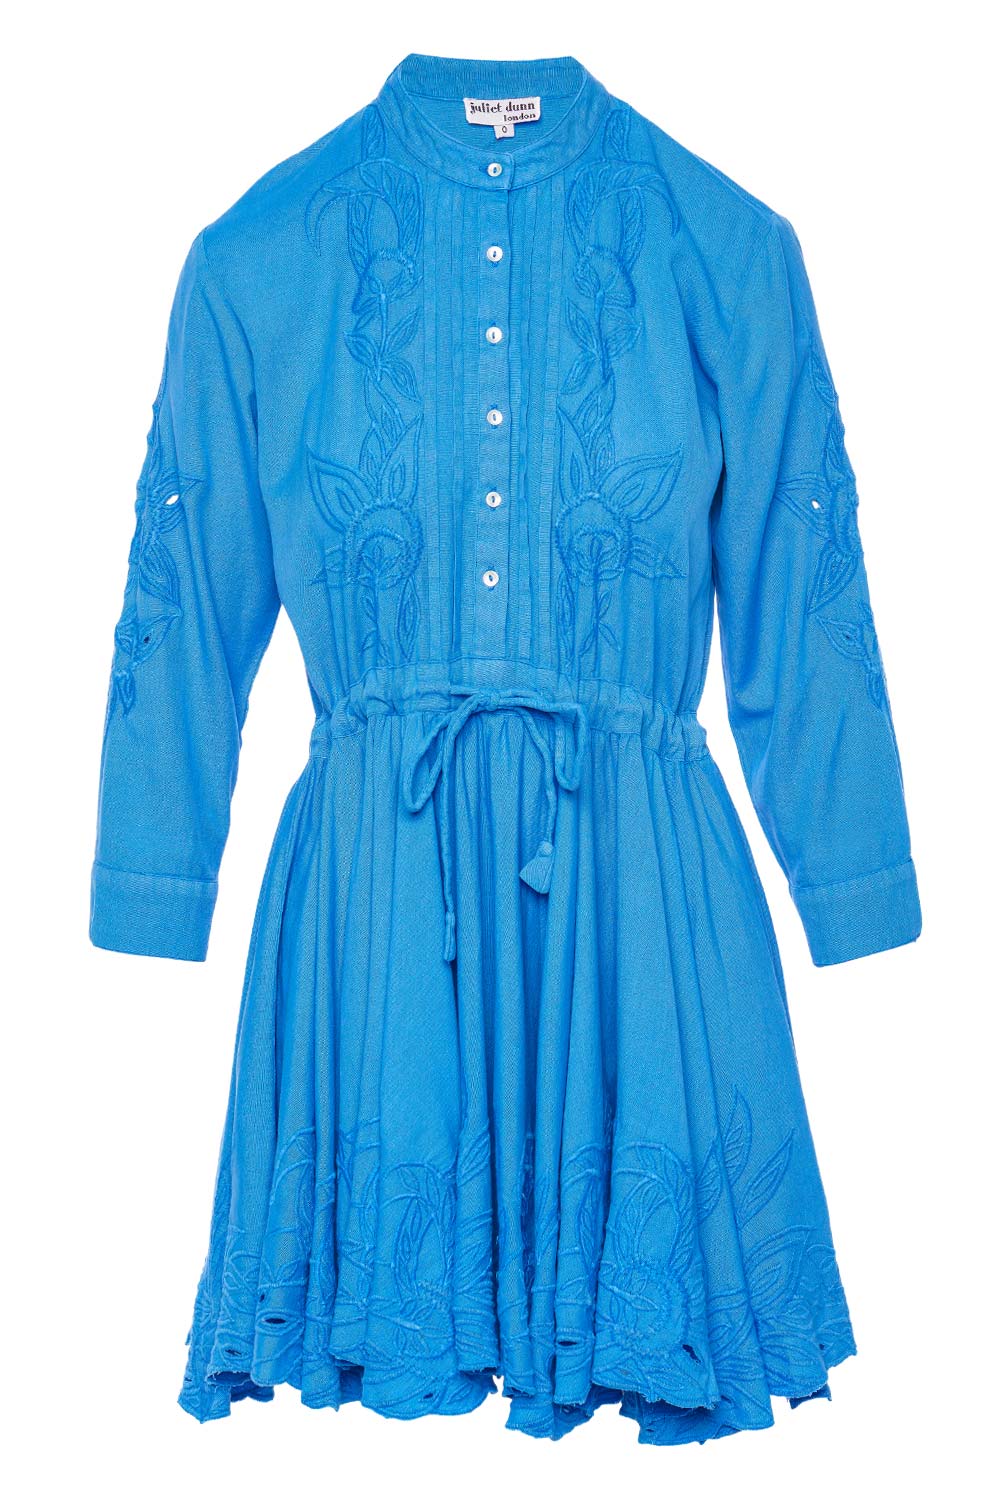 JULIET DUNN Klein Blue Embroidered Mini Beach Dress